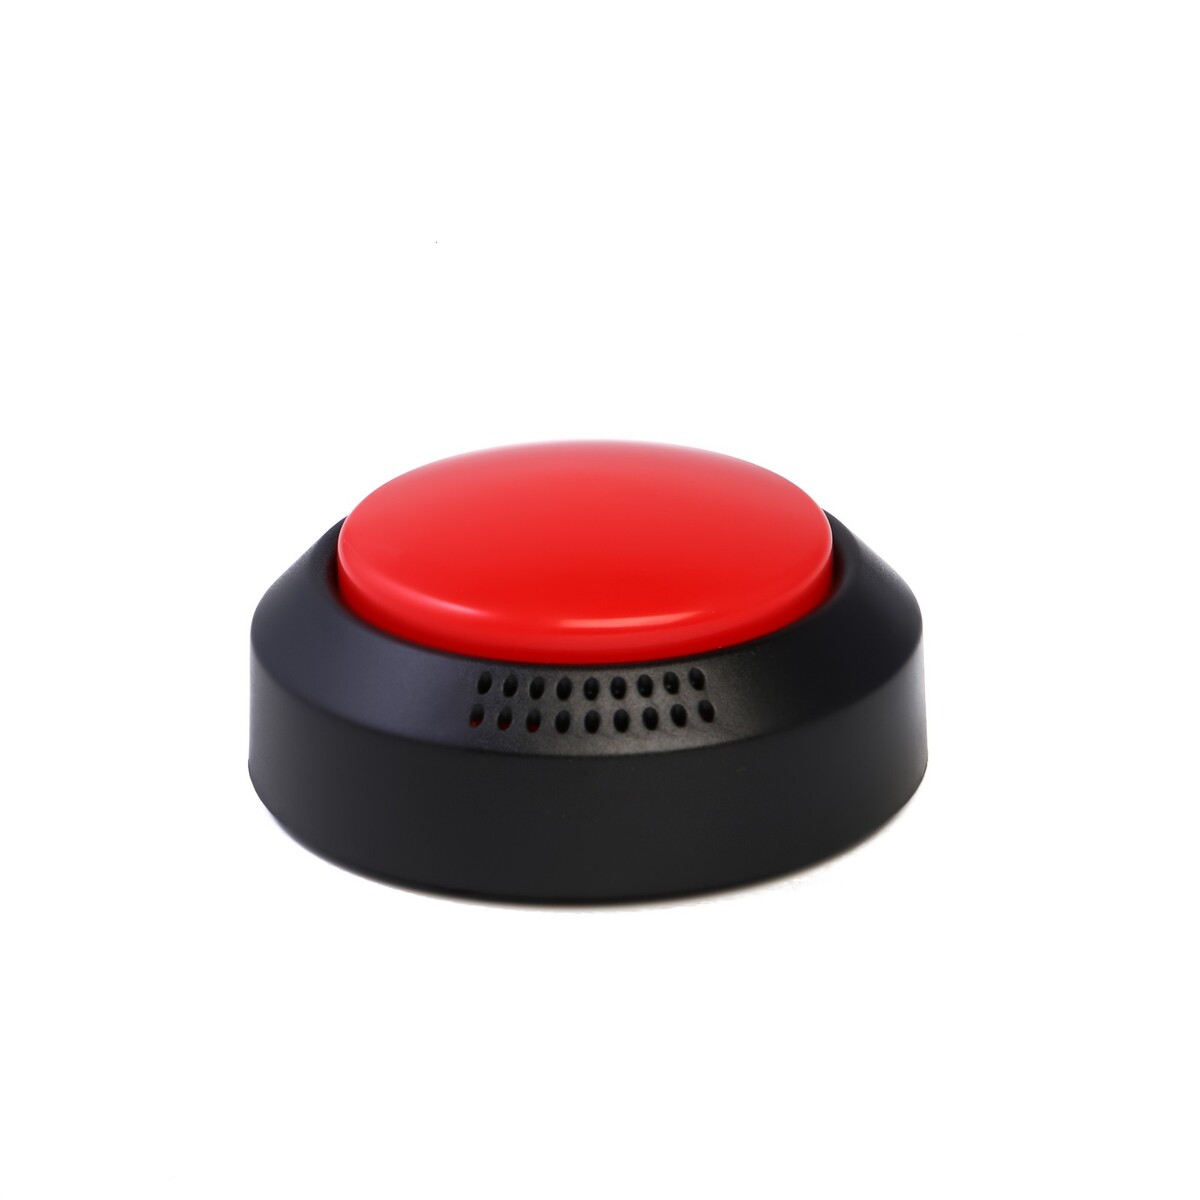 Красная кнопка для игр, 2 аа, 8.9 х 4.2 см No brand 06020811 - фото 2